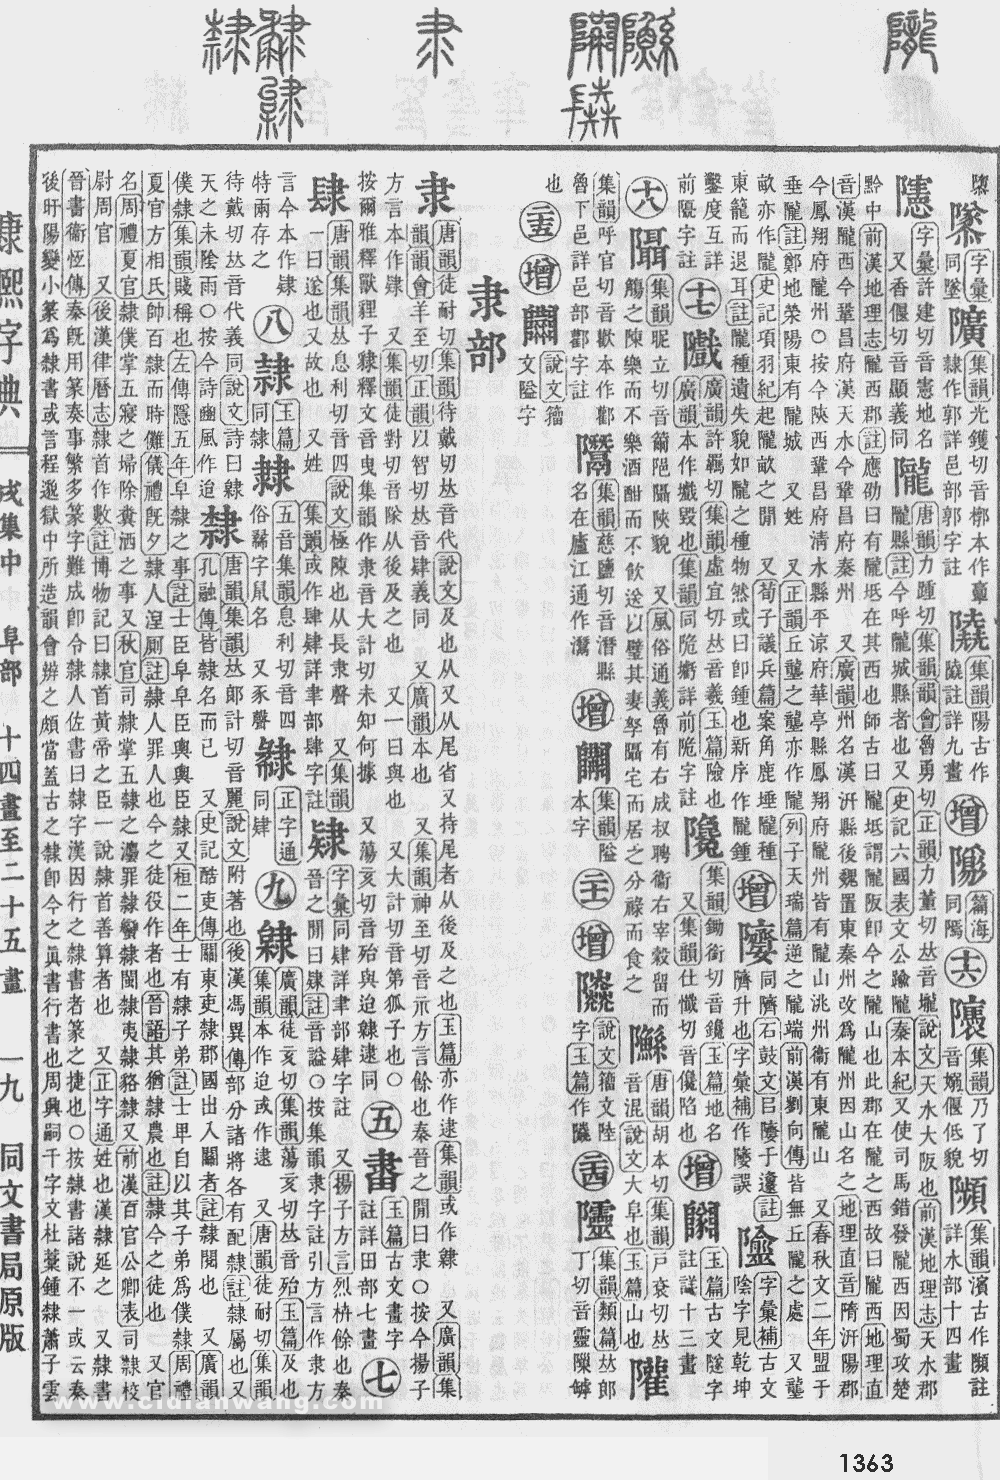 康熙字典掃描版第1363頁